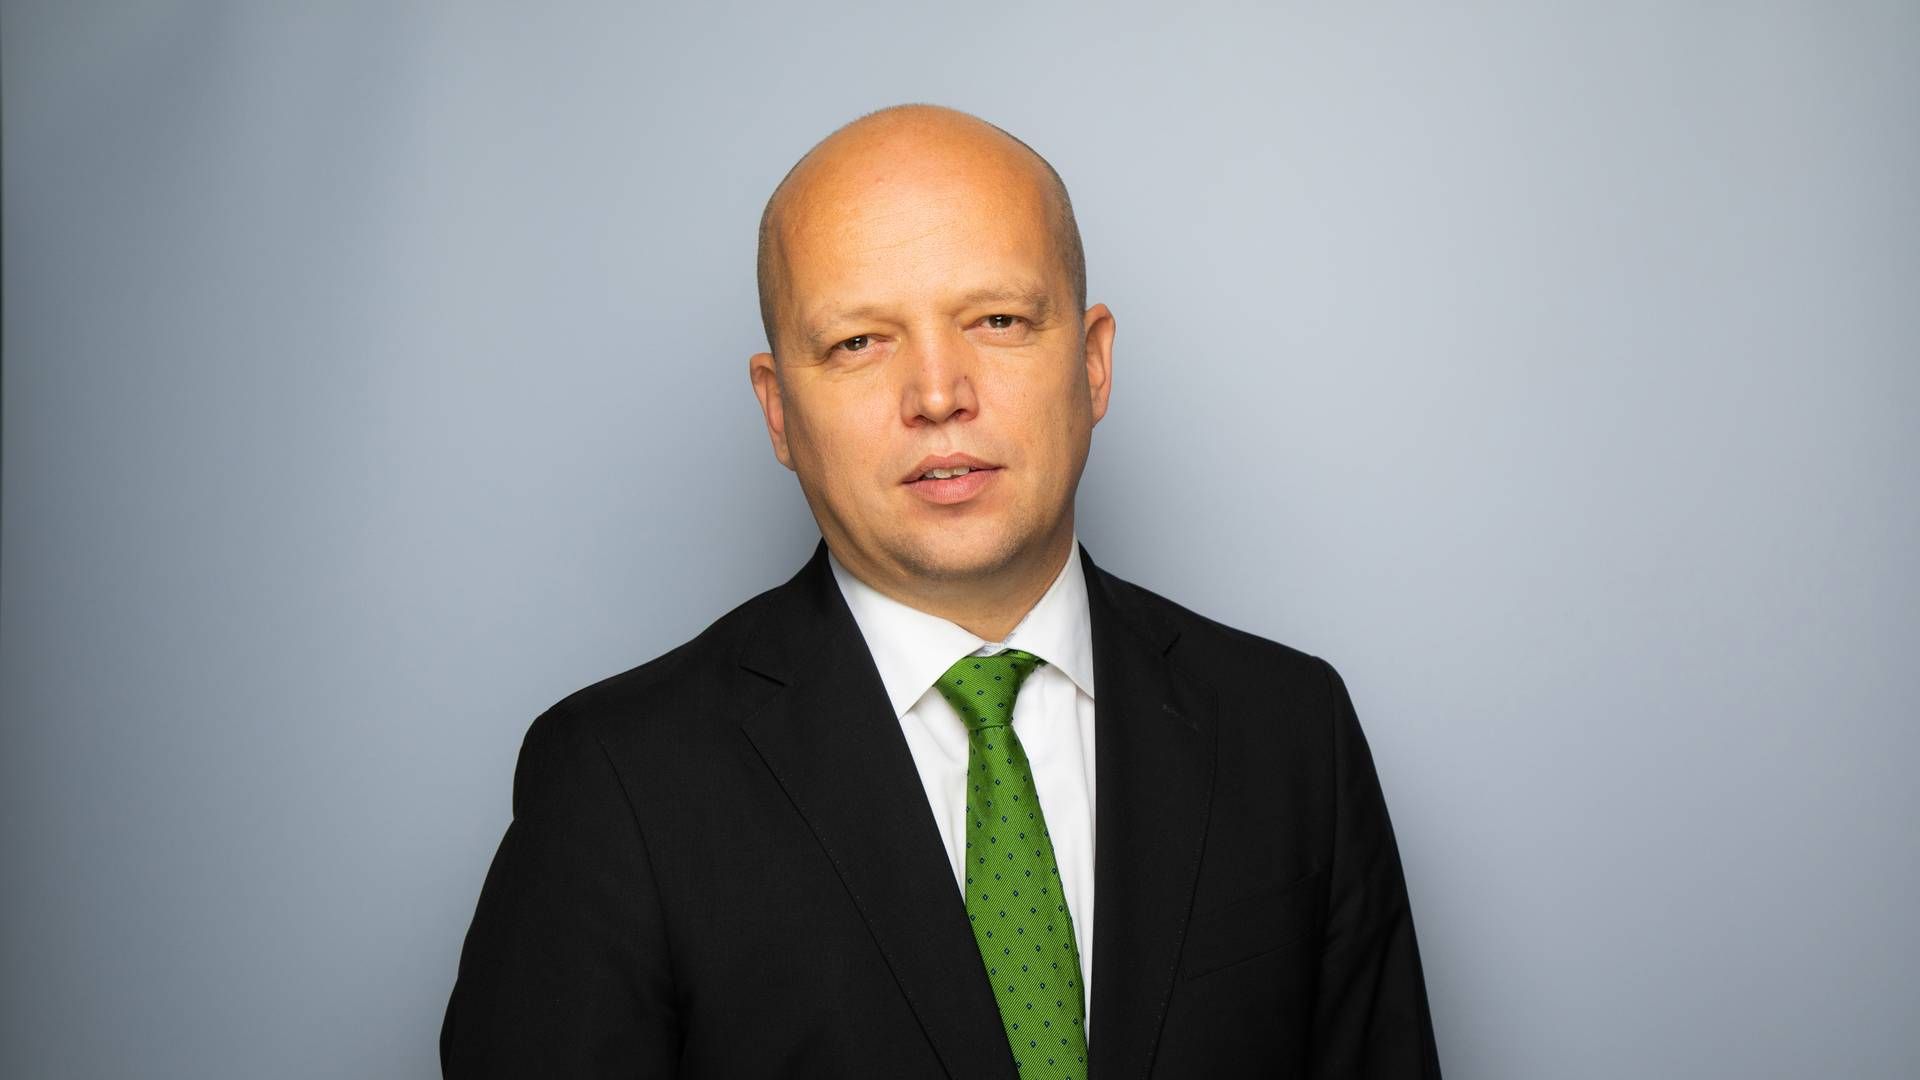 Den norske finansminister Trygve Slagsvold Vedum, | Foto: NTB Kommunikasjon/Statsministerens kontor